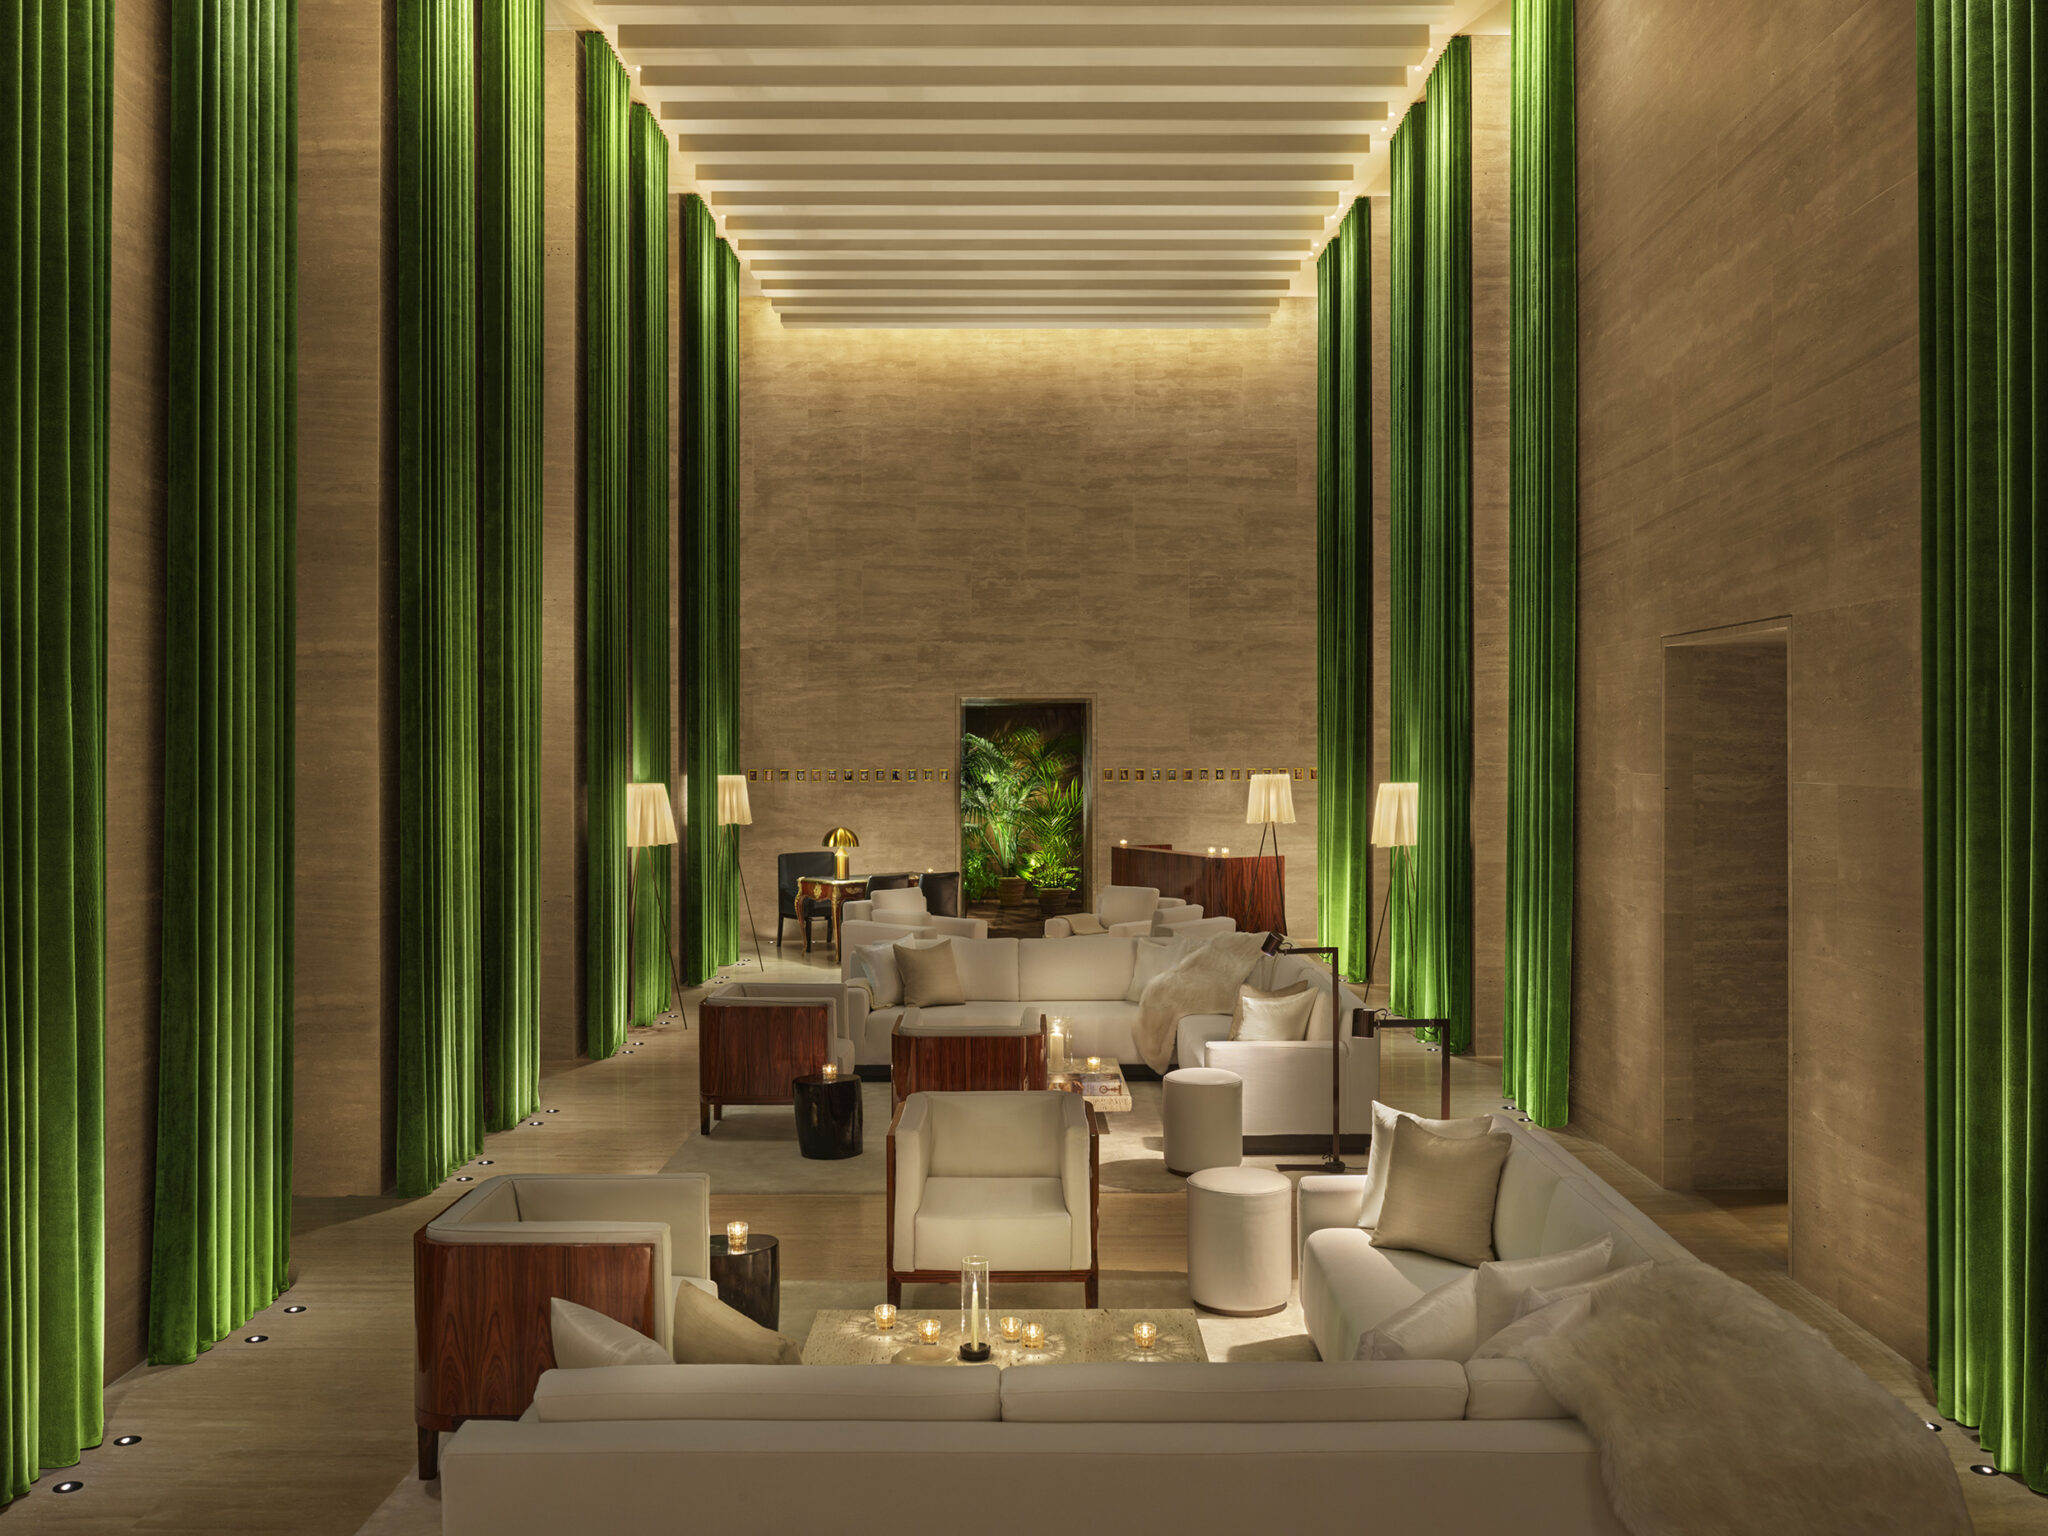 Asientos elegantes en el lobby con cortinas en tonos joya del piso al techo